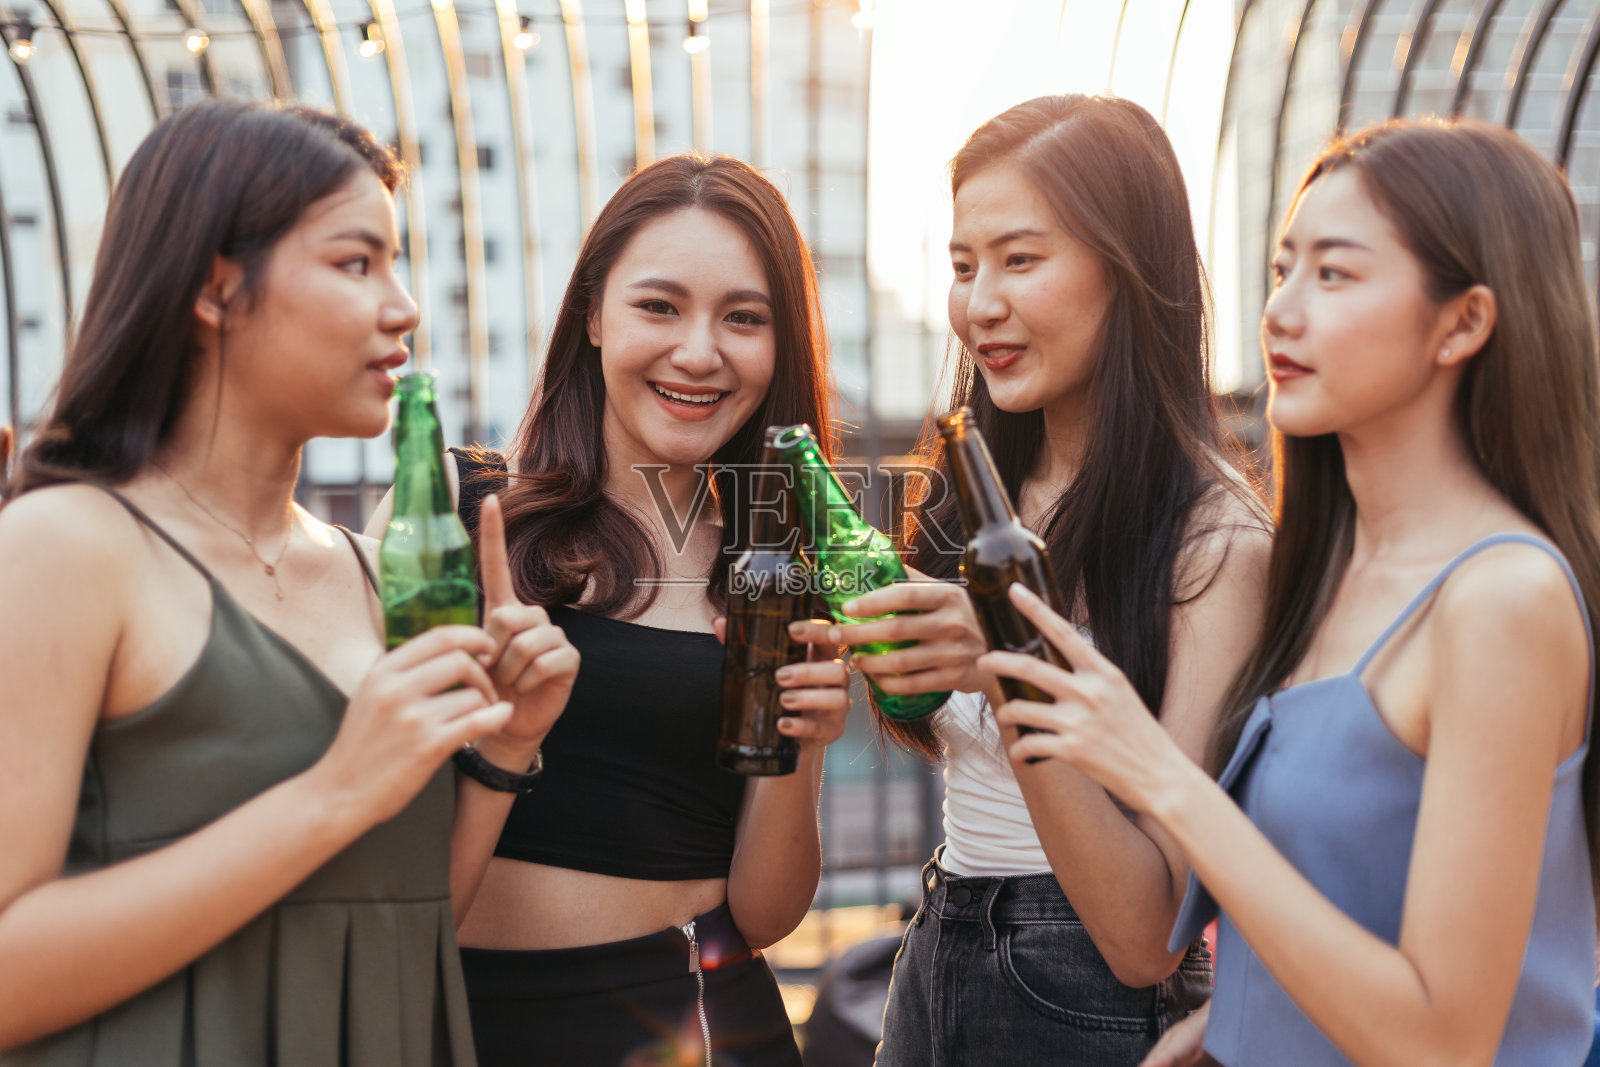 年轻女子在酒吧喝酒-蓝牛仔影像-中国原创广告影像素材